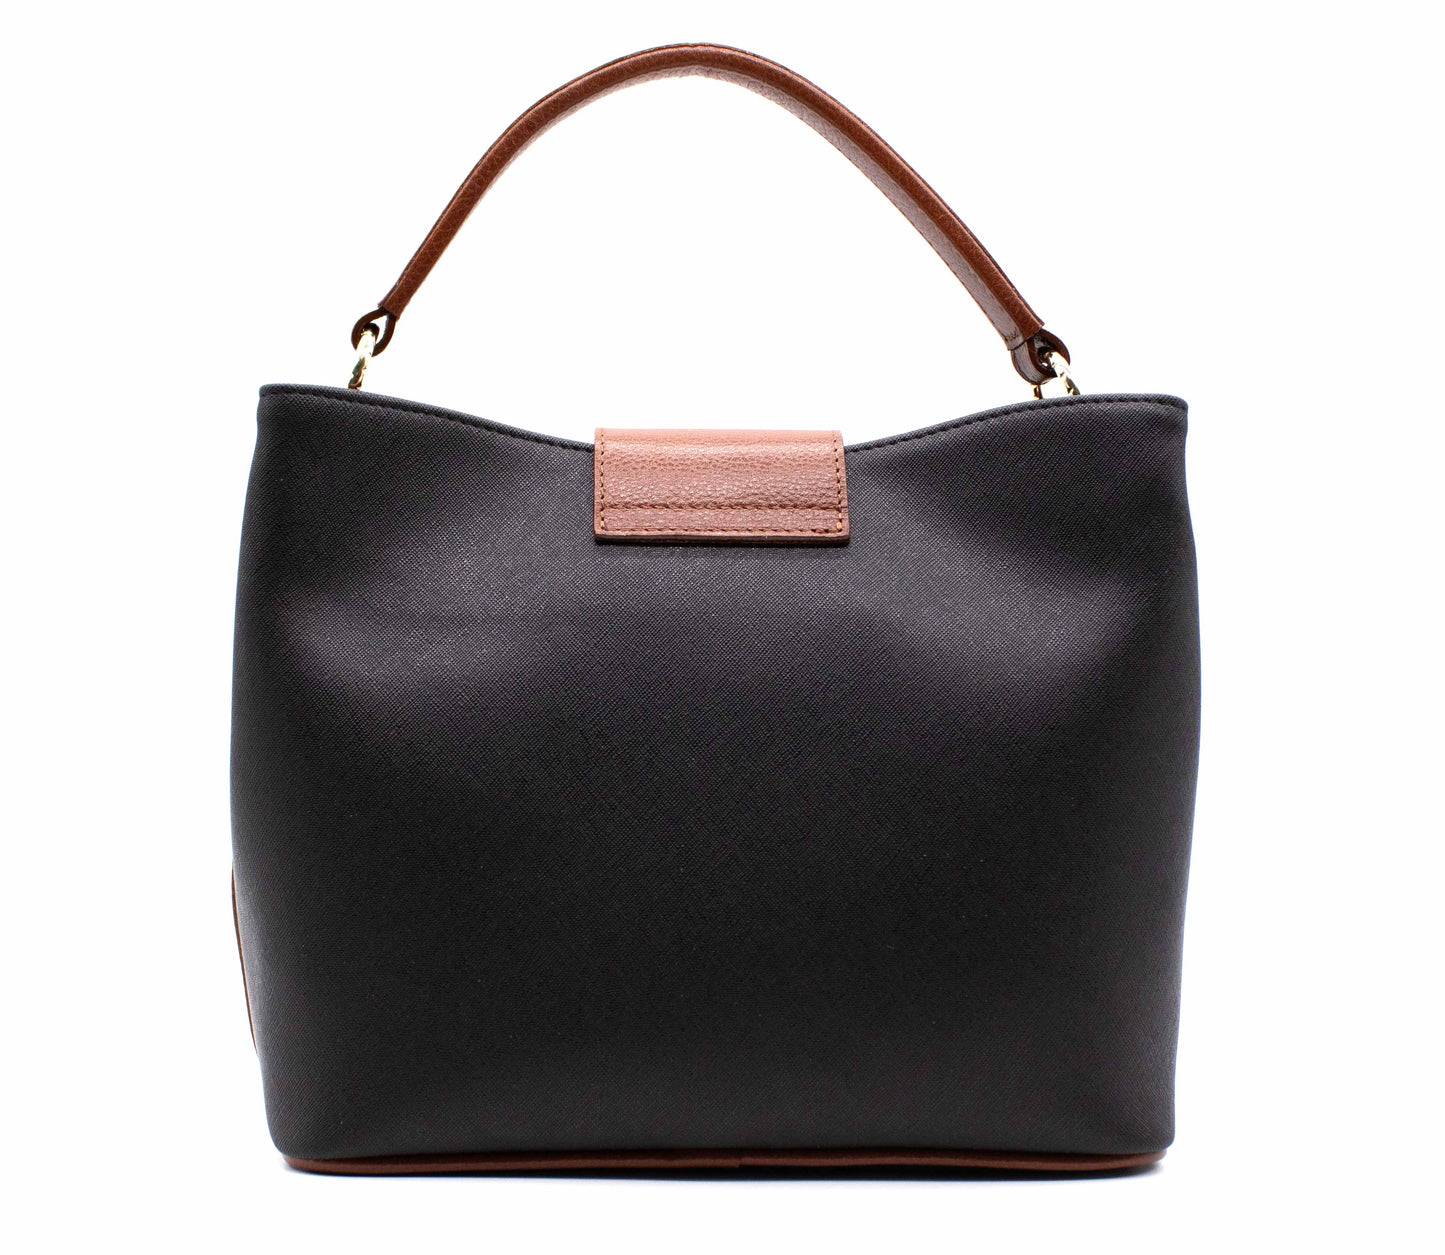 #color_ Black & Honey | Cavalinho Unique Handbag - Black & Honey - 1826157.32.99_3